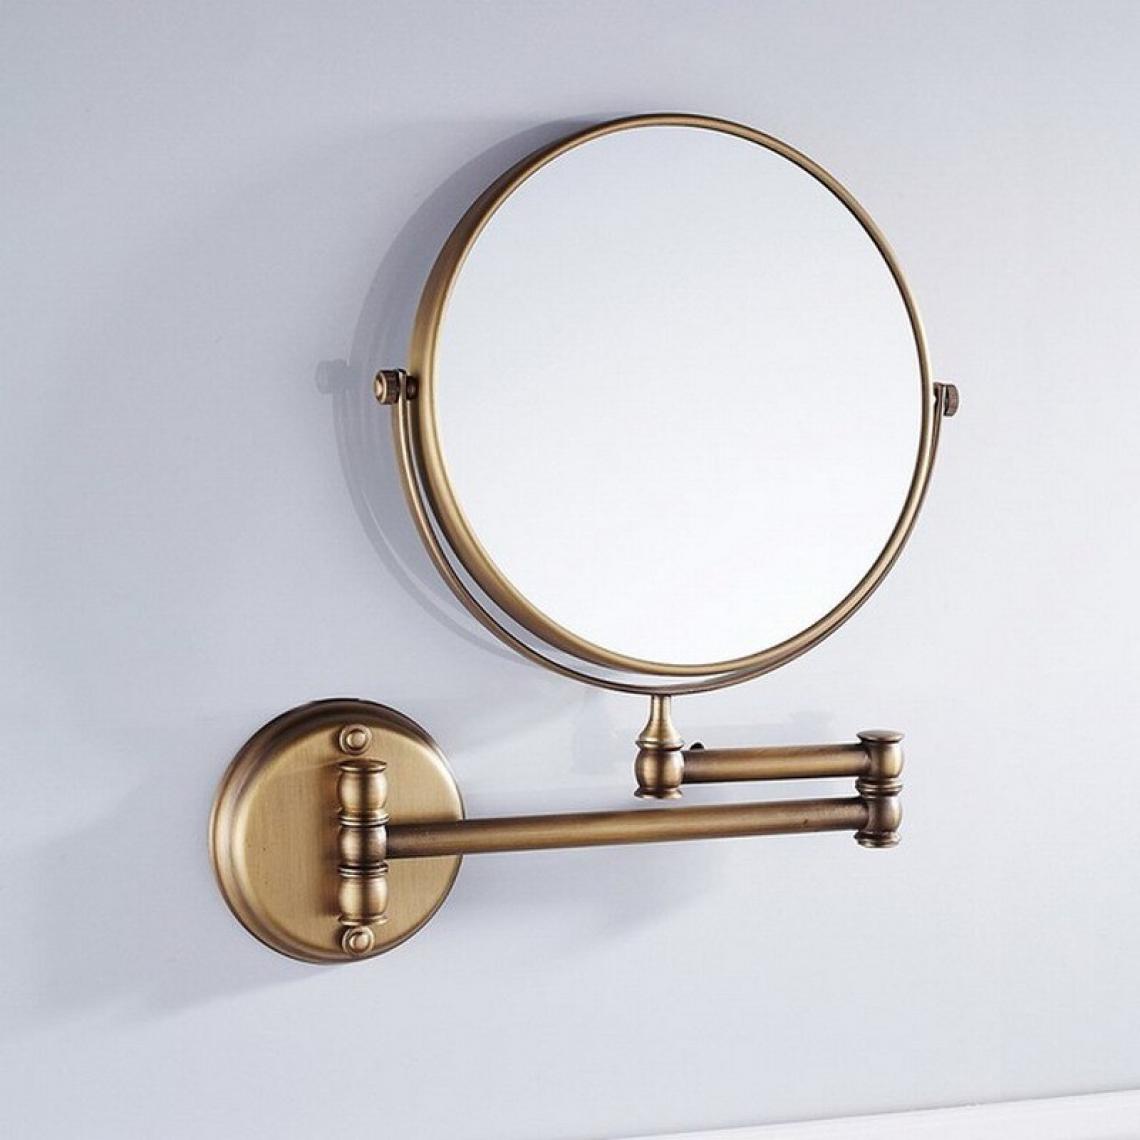 Universal - Miroir de salle de bains mural en laiton antique 8 pouces rond 3x agrandissement 360 degrés réglable miroir de maquillage(Or) - Miroir de salle de bain